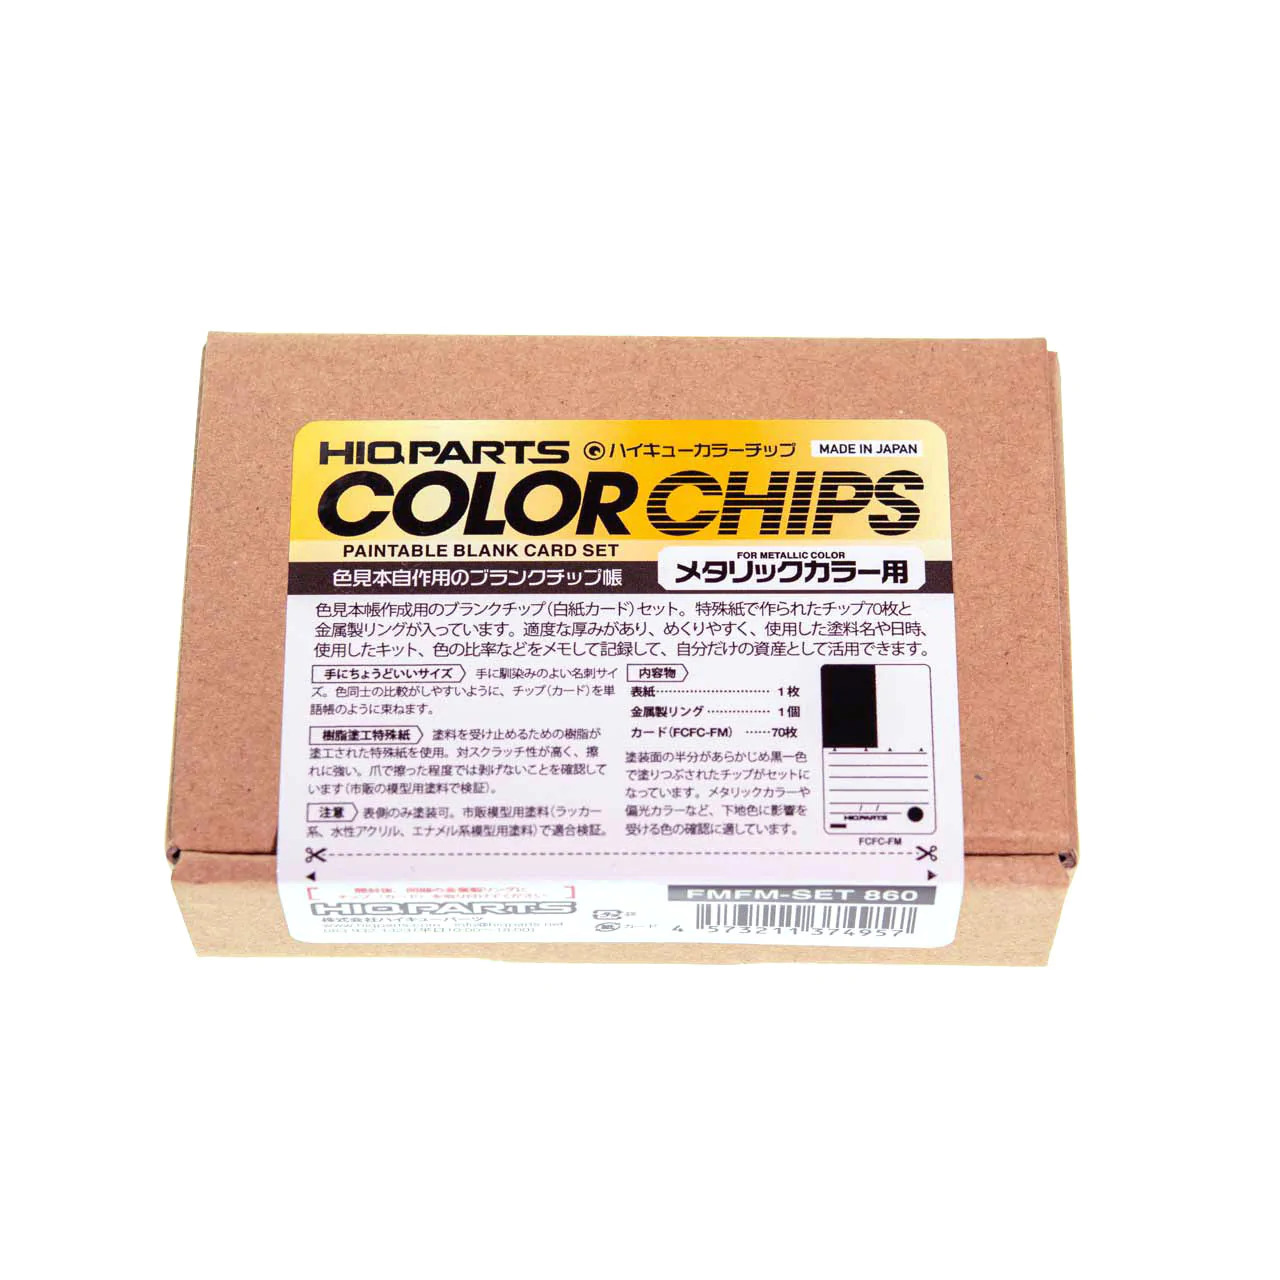 HiQ Parts Paintable Blank Color Chip Card Set for Metallic Colors (70pcs)